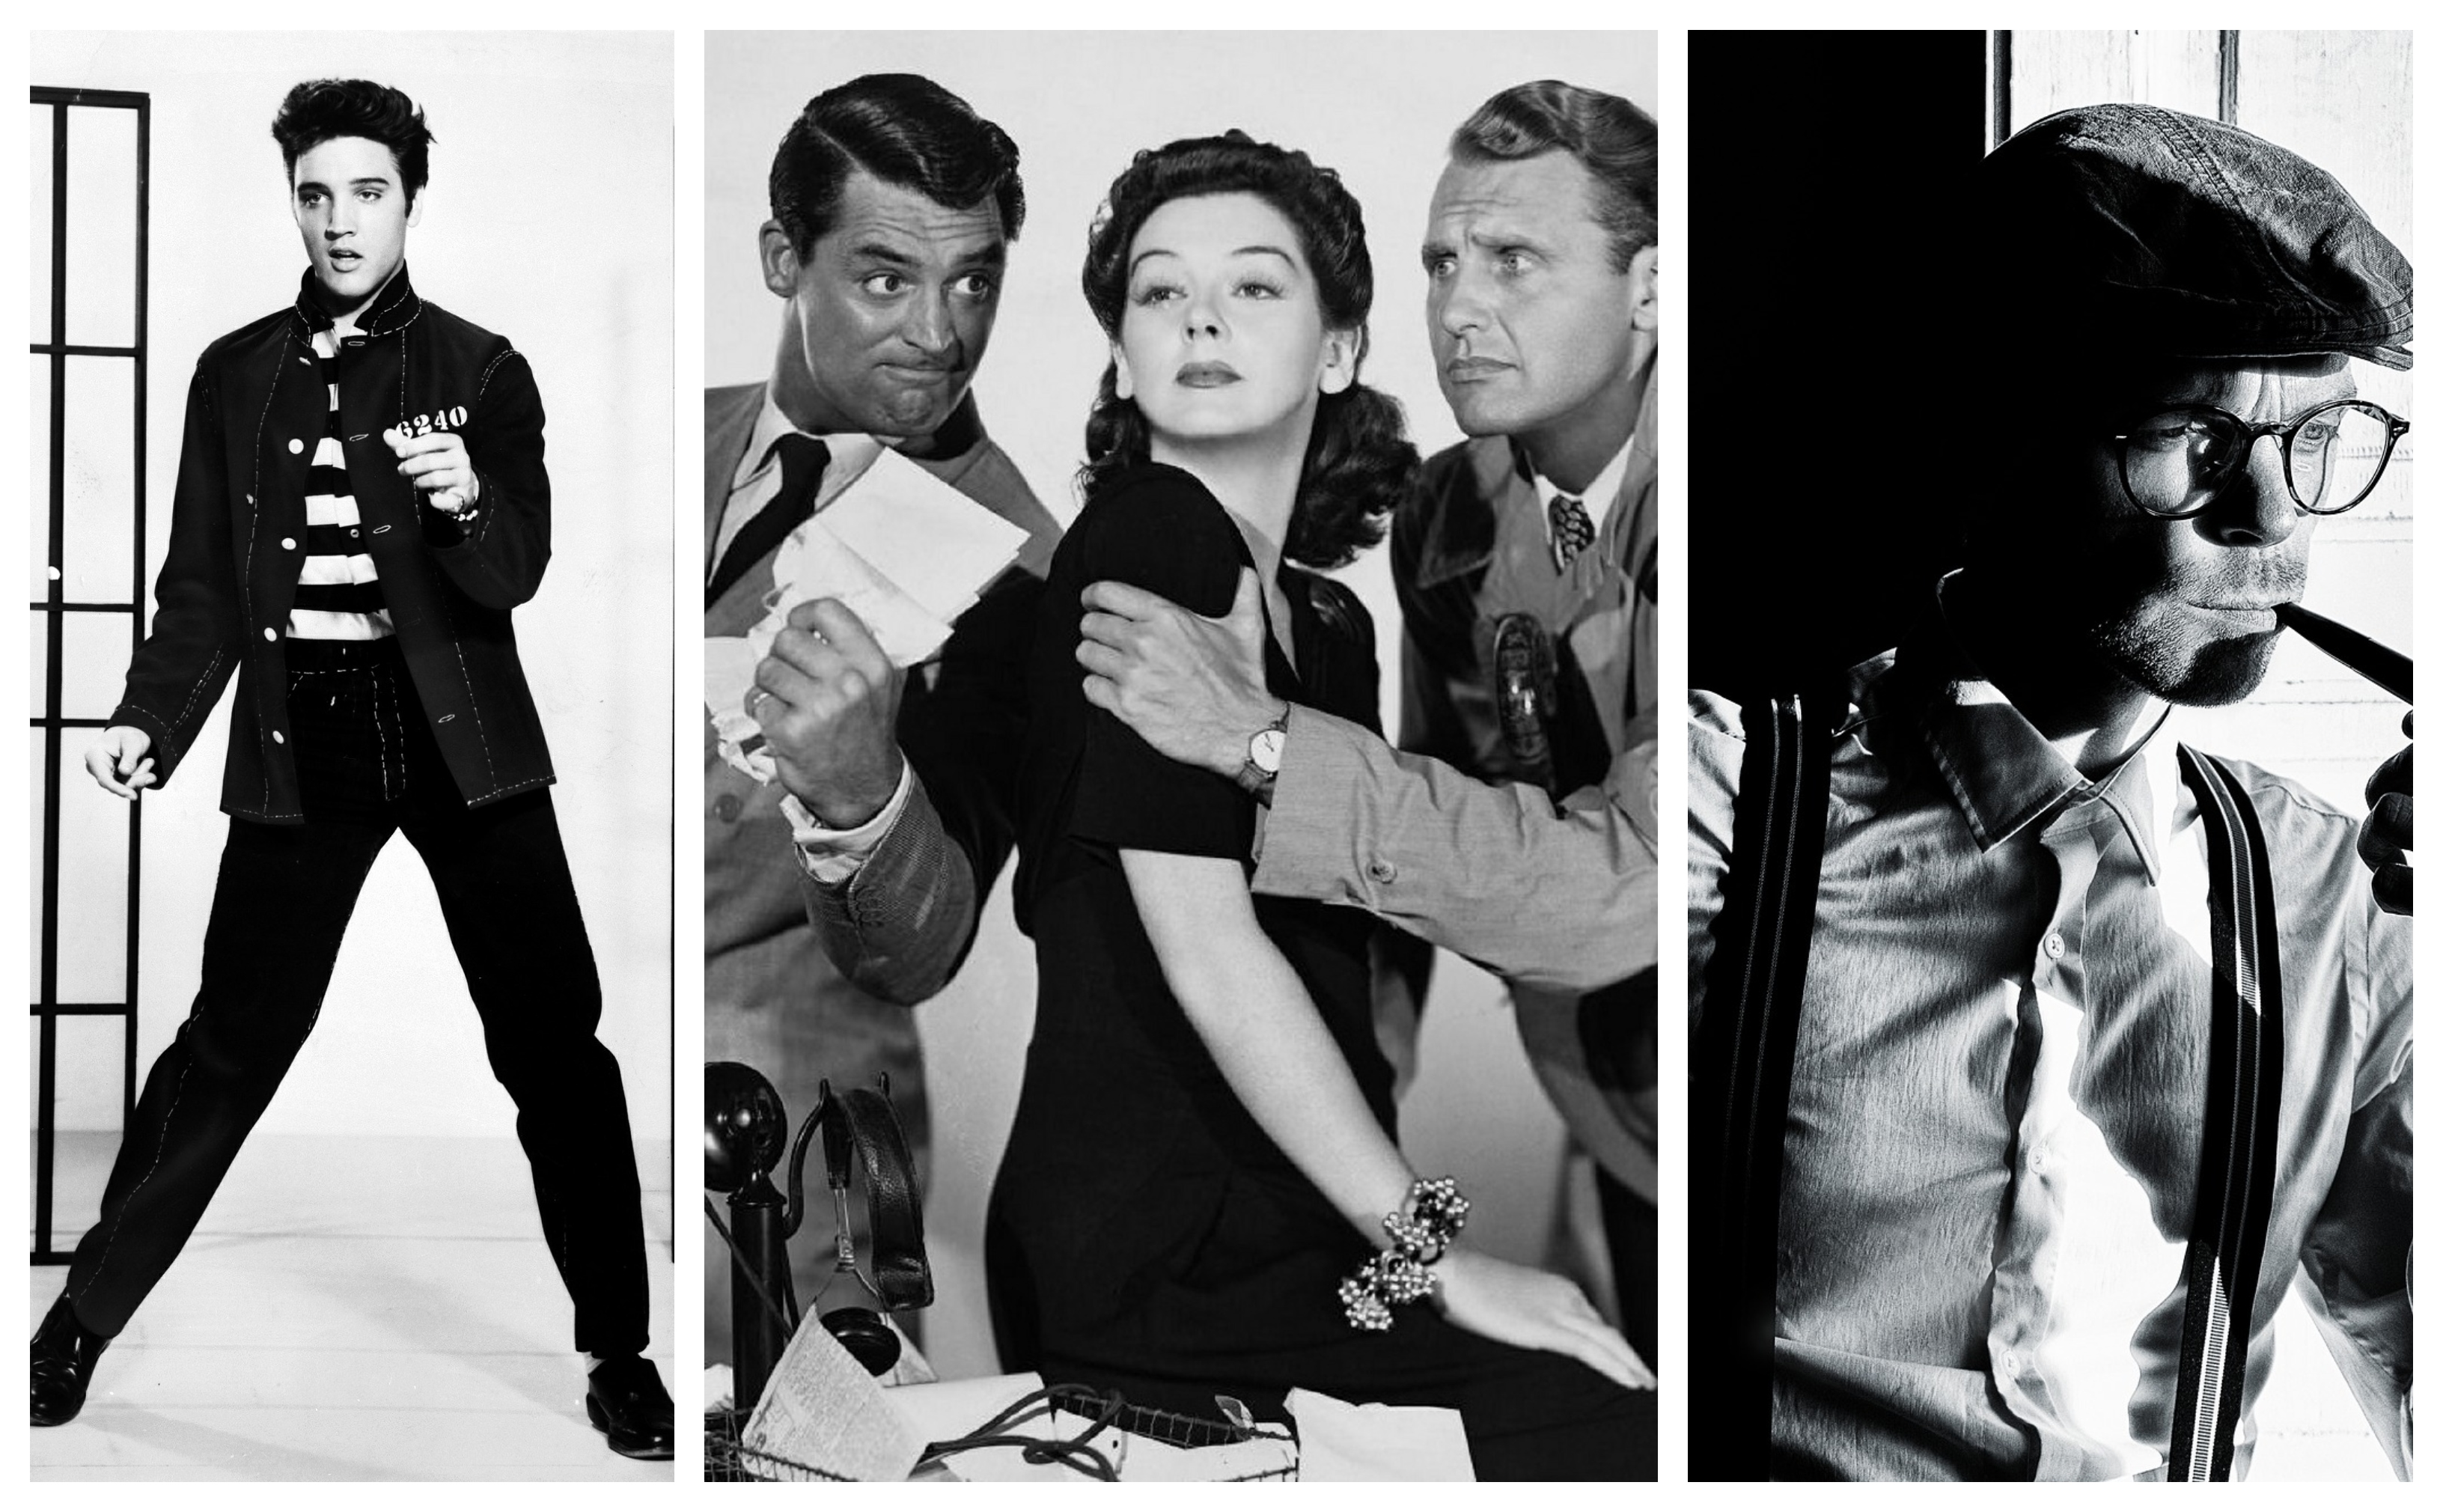 Elvis, Cary Grant, James Dean, les icones du cinema des année 50, collage photographie noir et blanc iconique